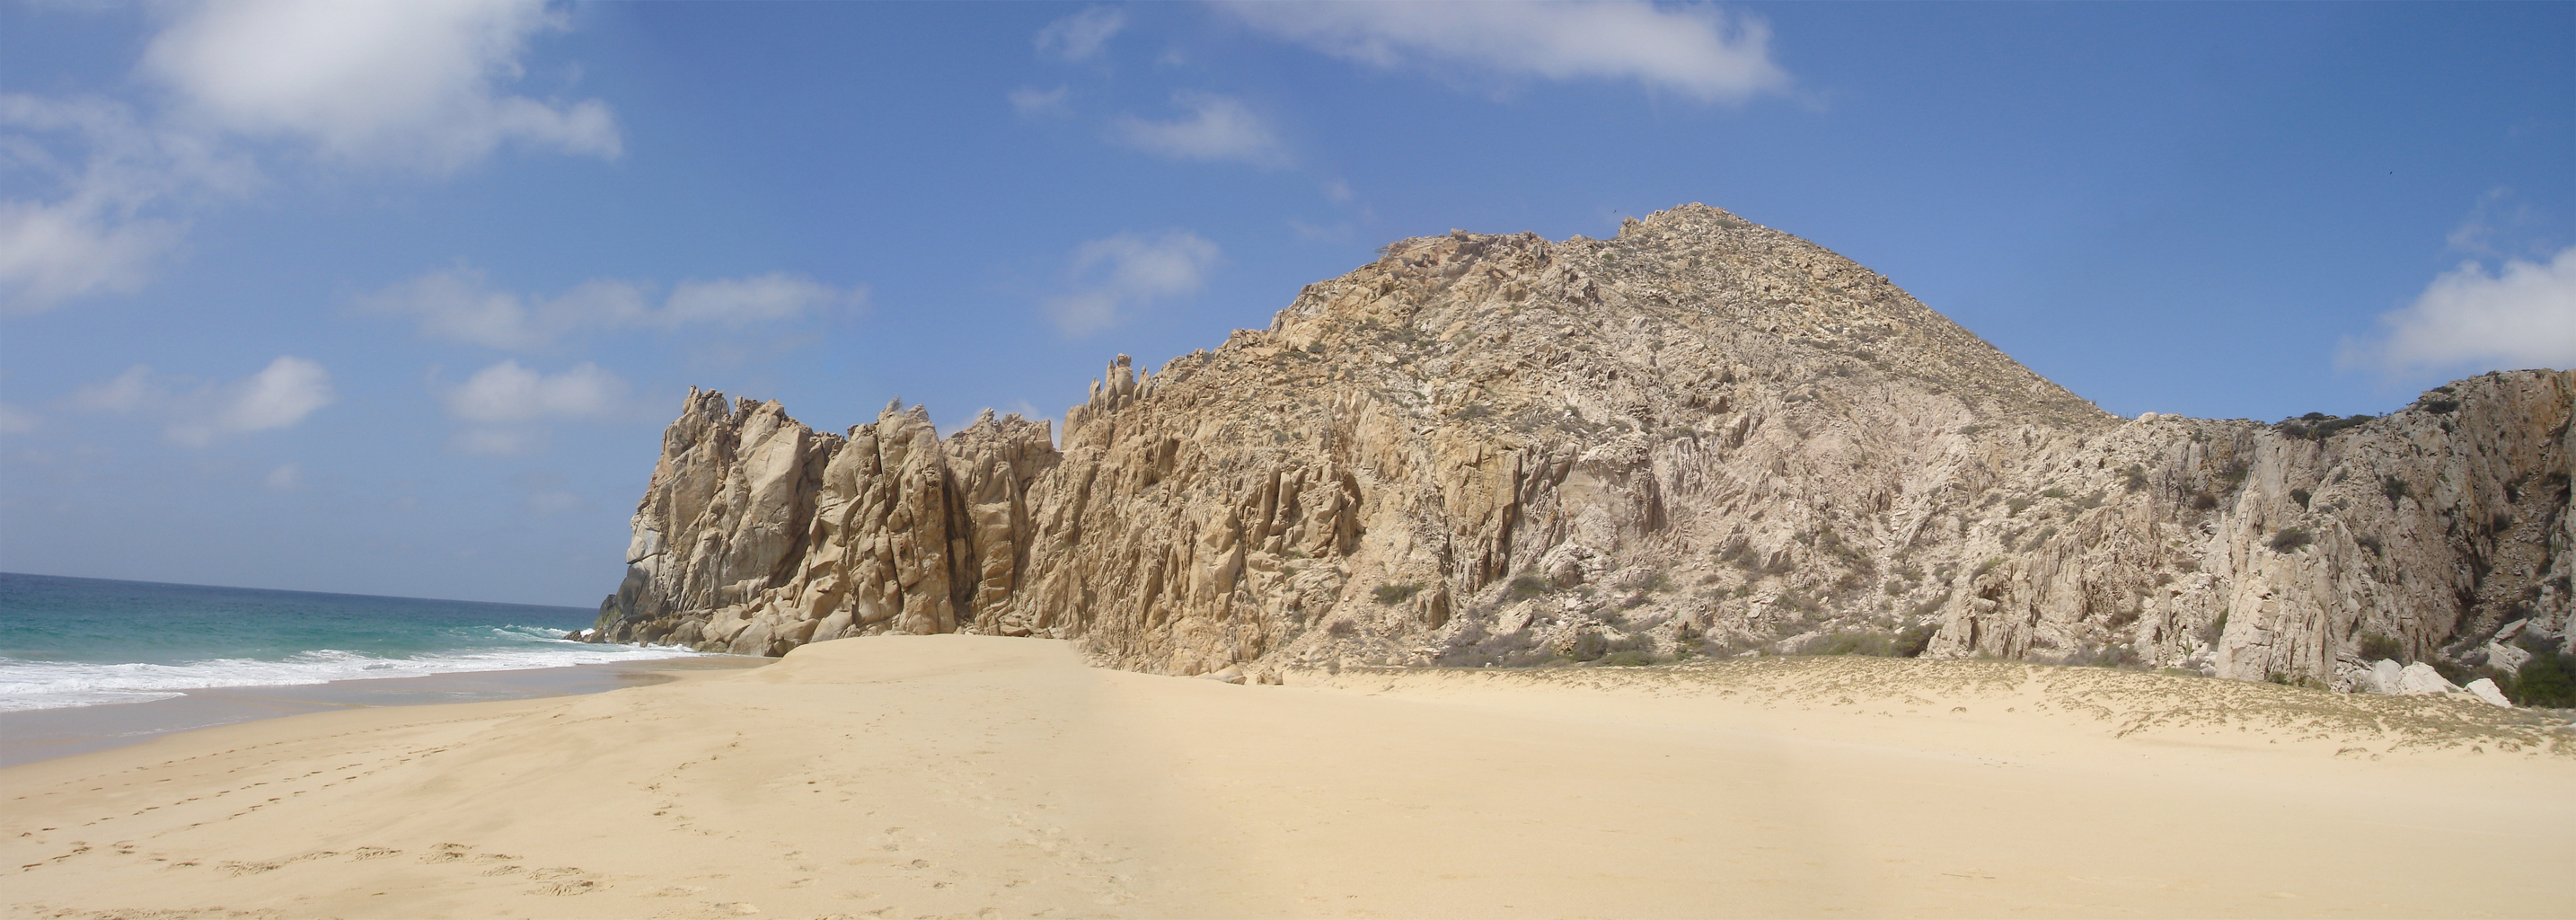 dual screen wallpaper,sand,rock,formation,natural environment,wadi